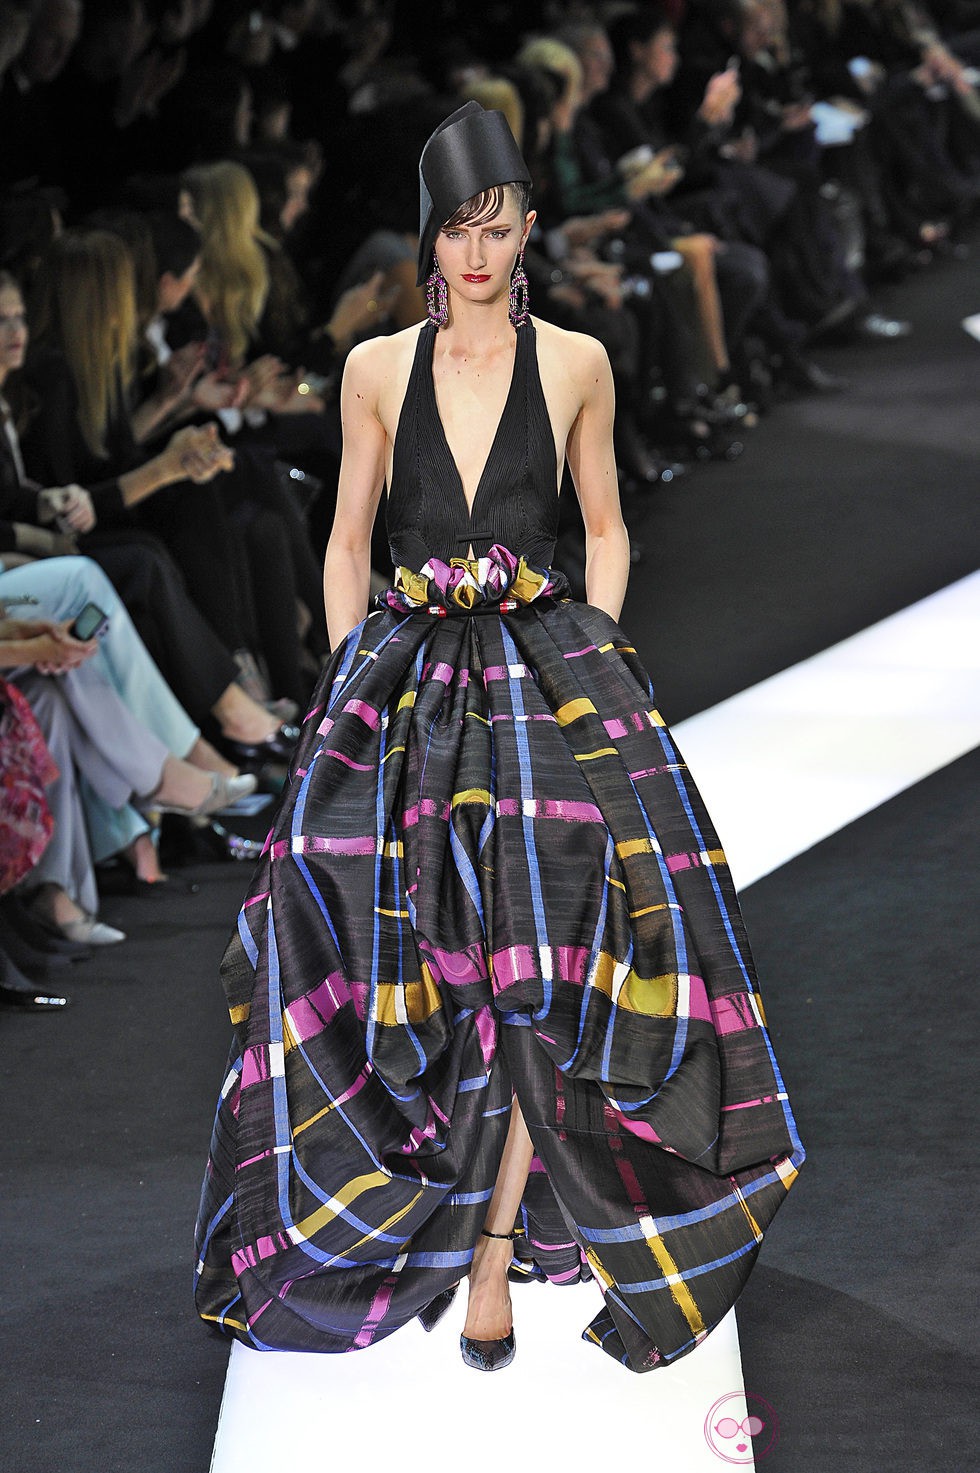 Vestido voluminoso de la colección primavera/verano 2013 de Armani en la Semana de la Alta Costura de París